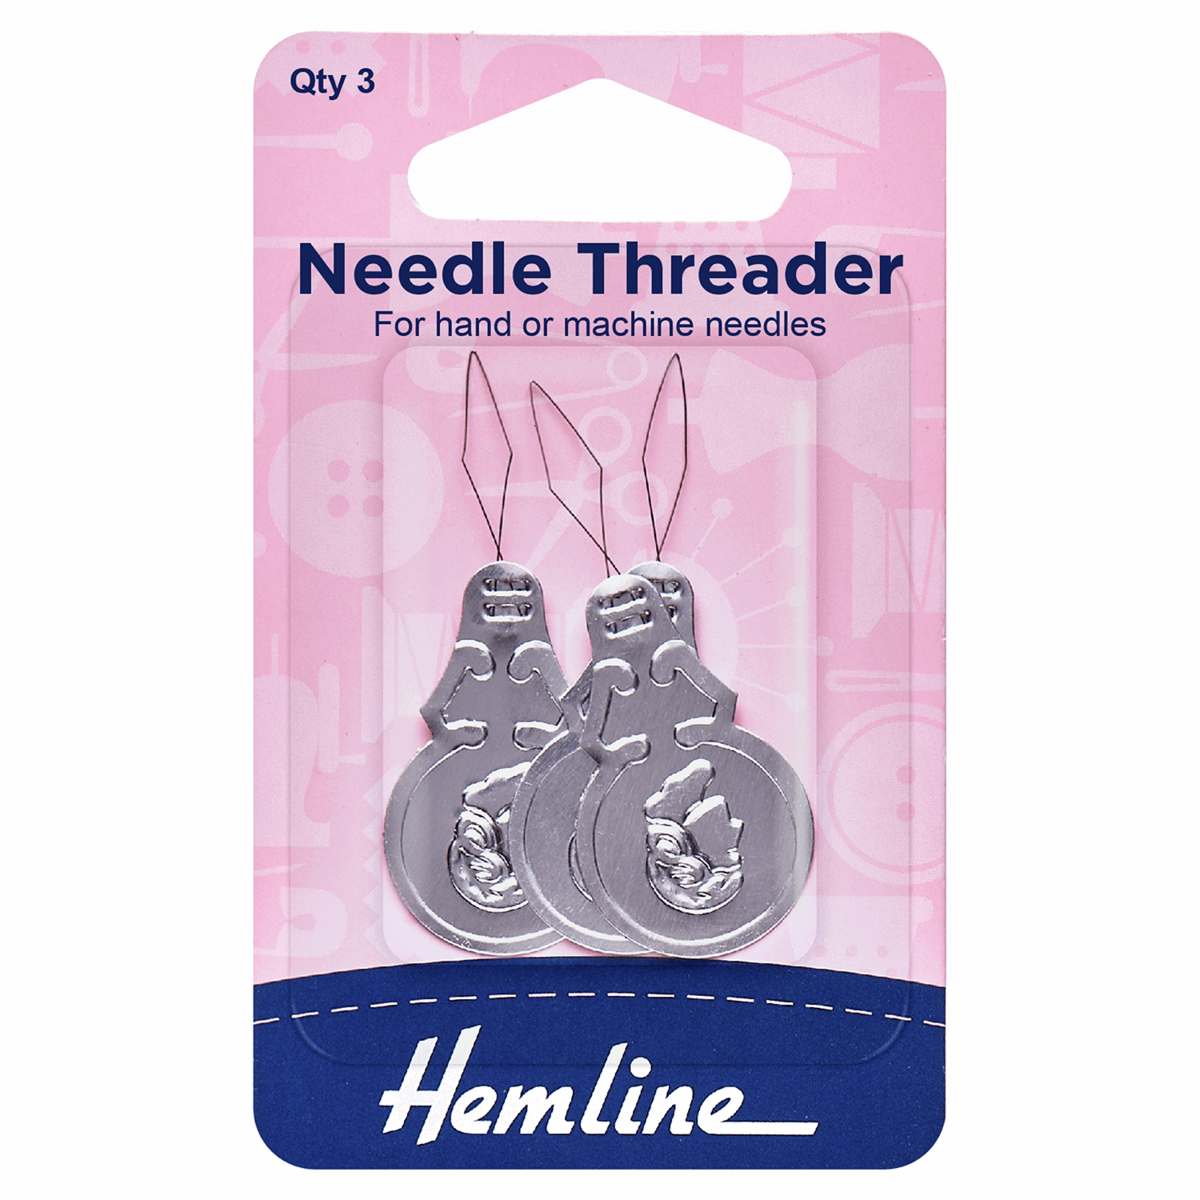 Needle threader : Aluminium : 3 pieces per pack by Hemline